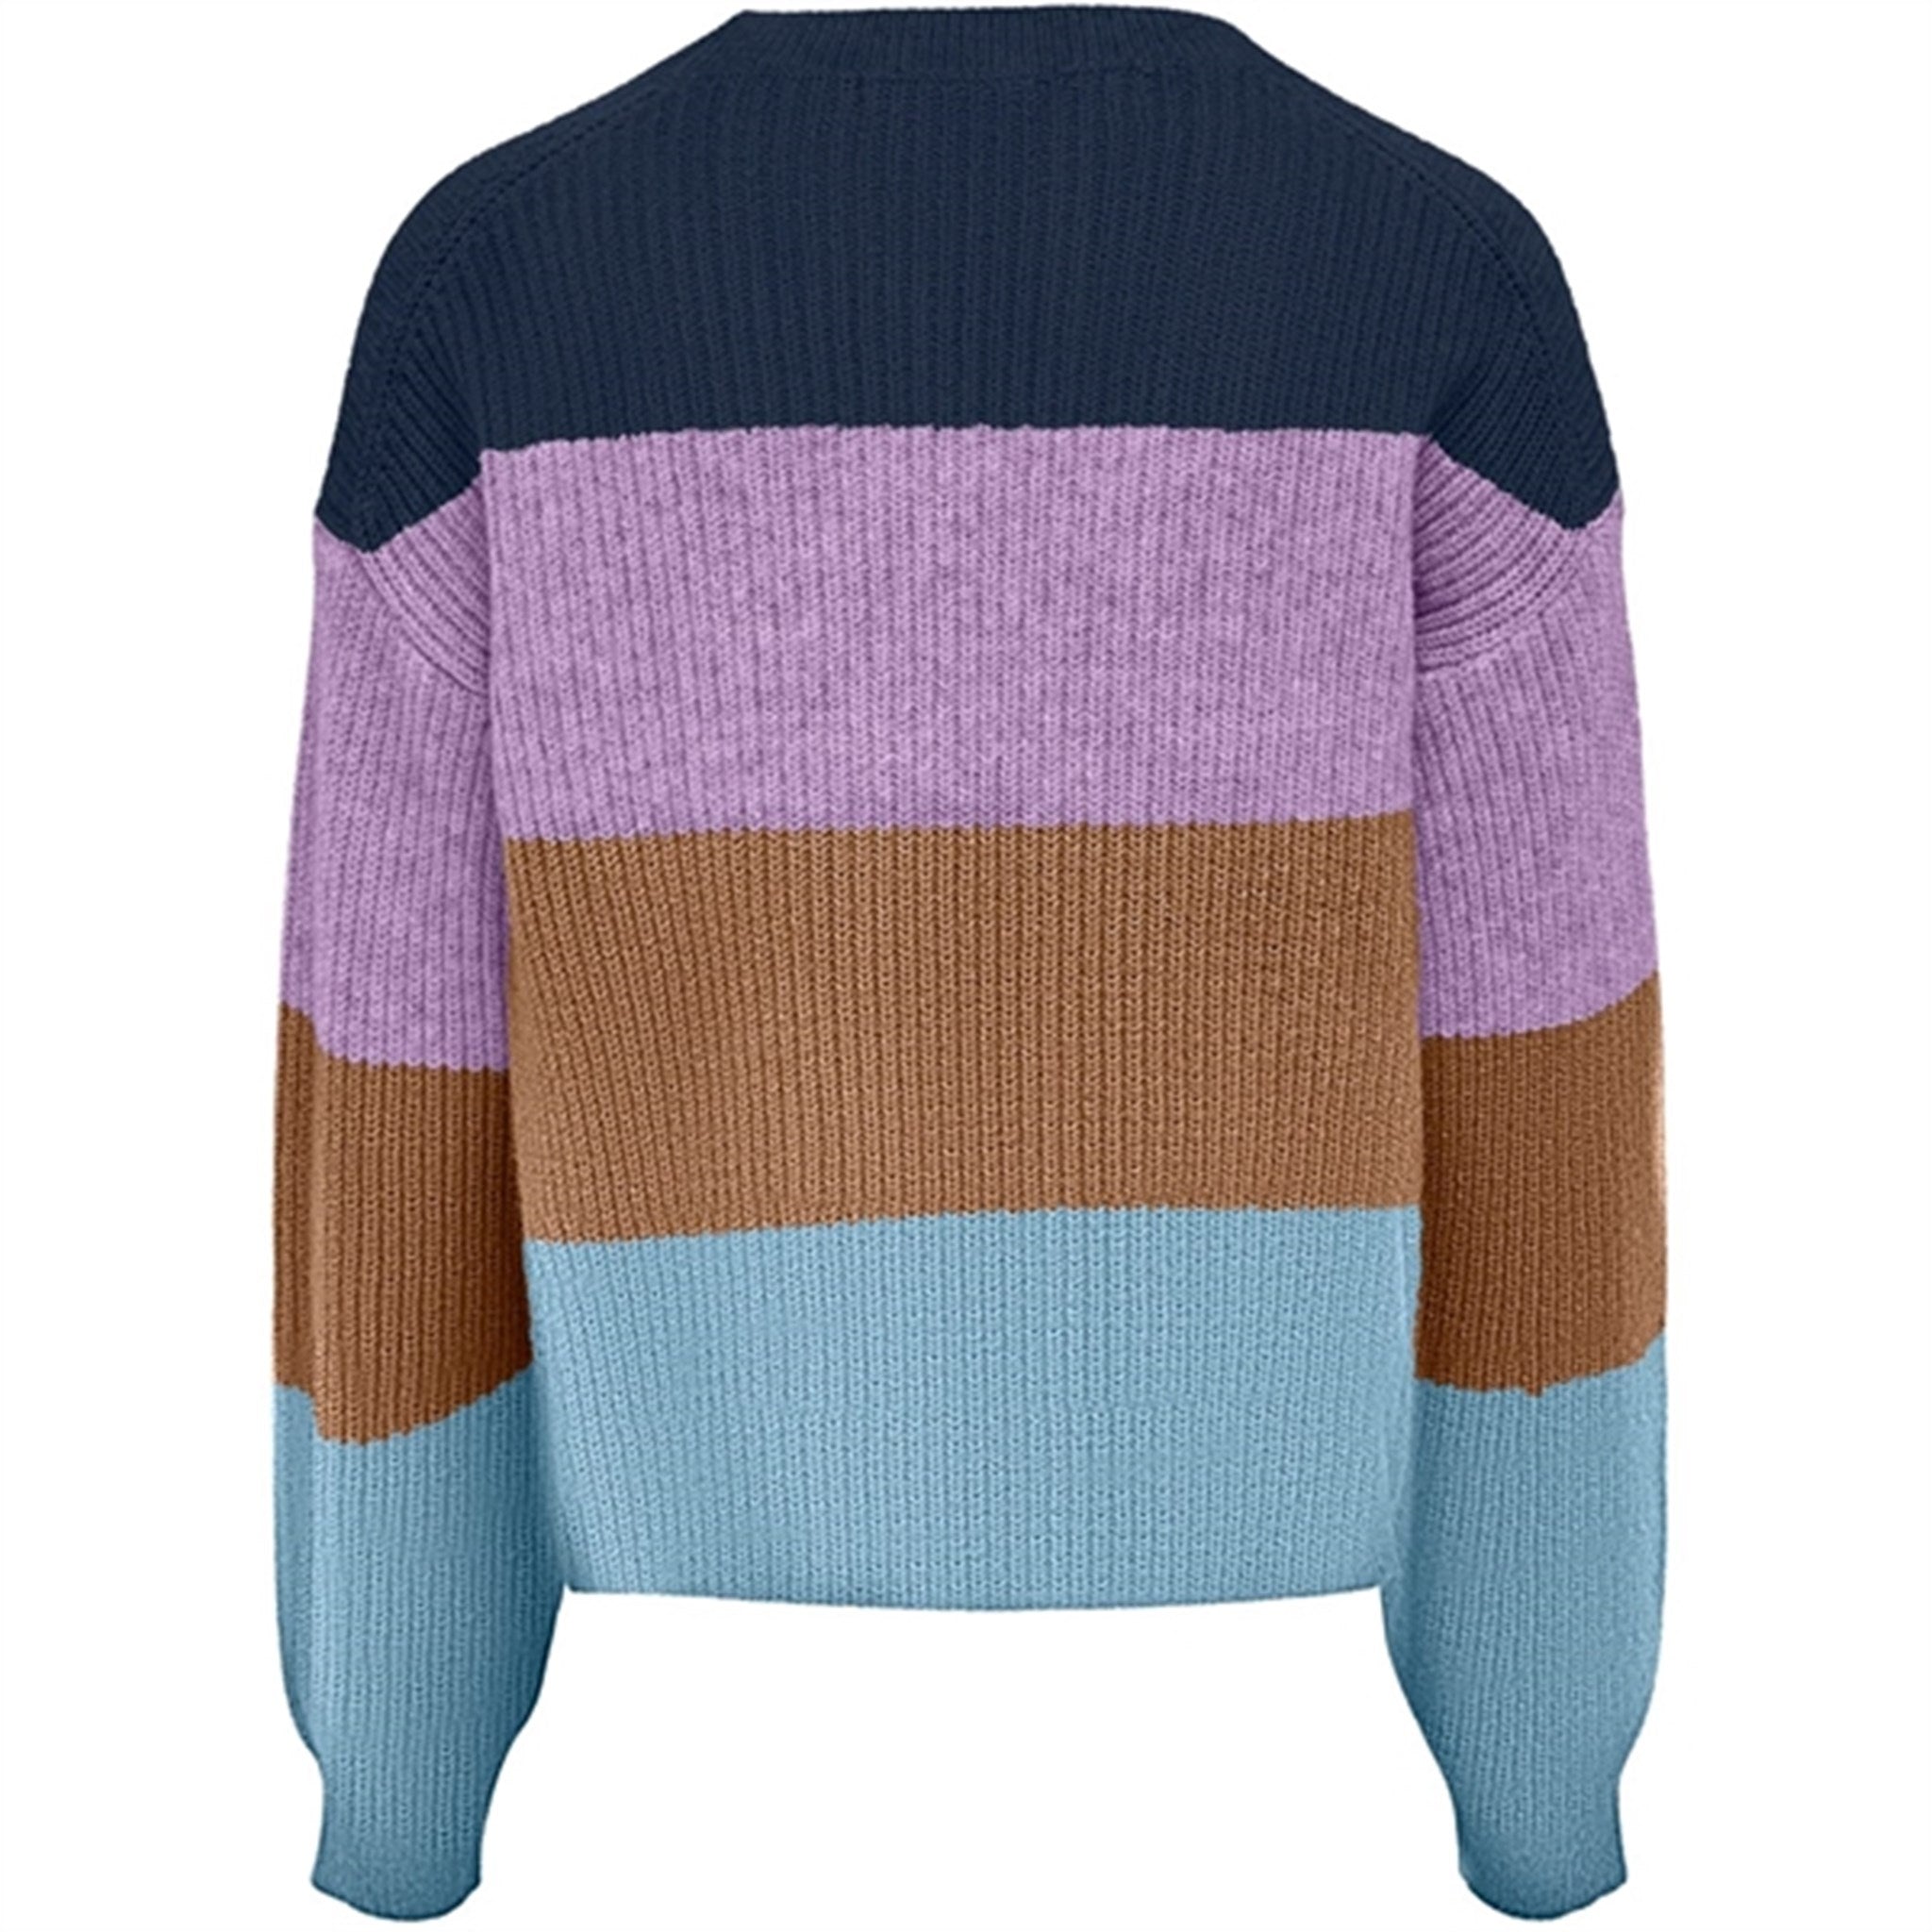 kids only Dress Blues Sandy Stripe Knit Sweater Noos 2